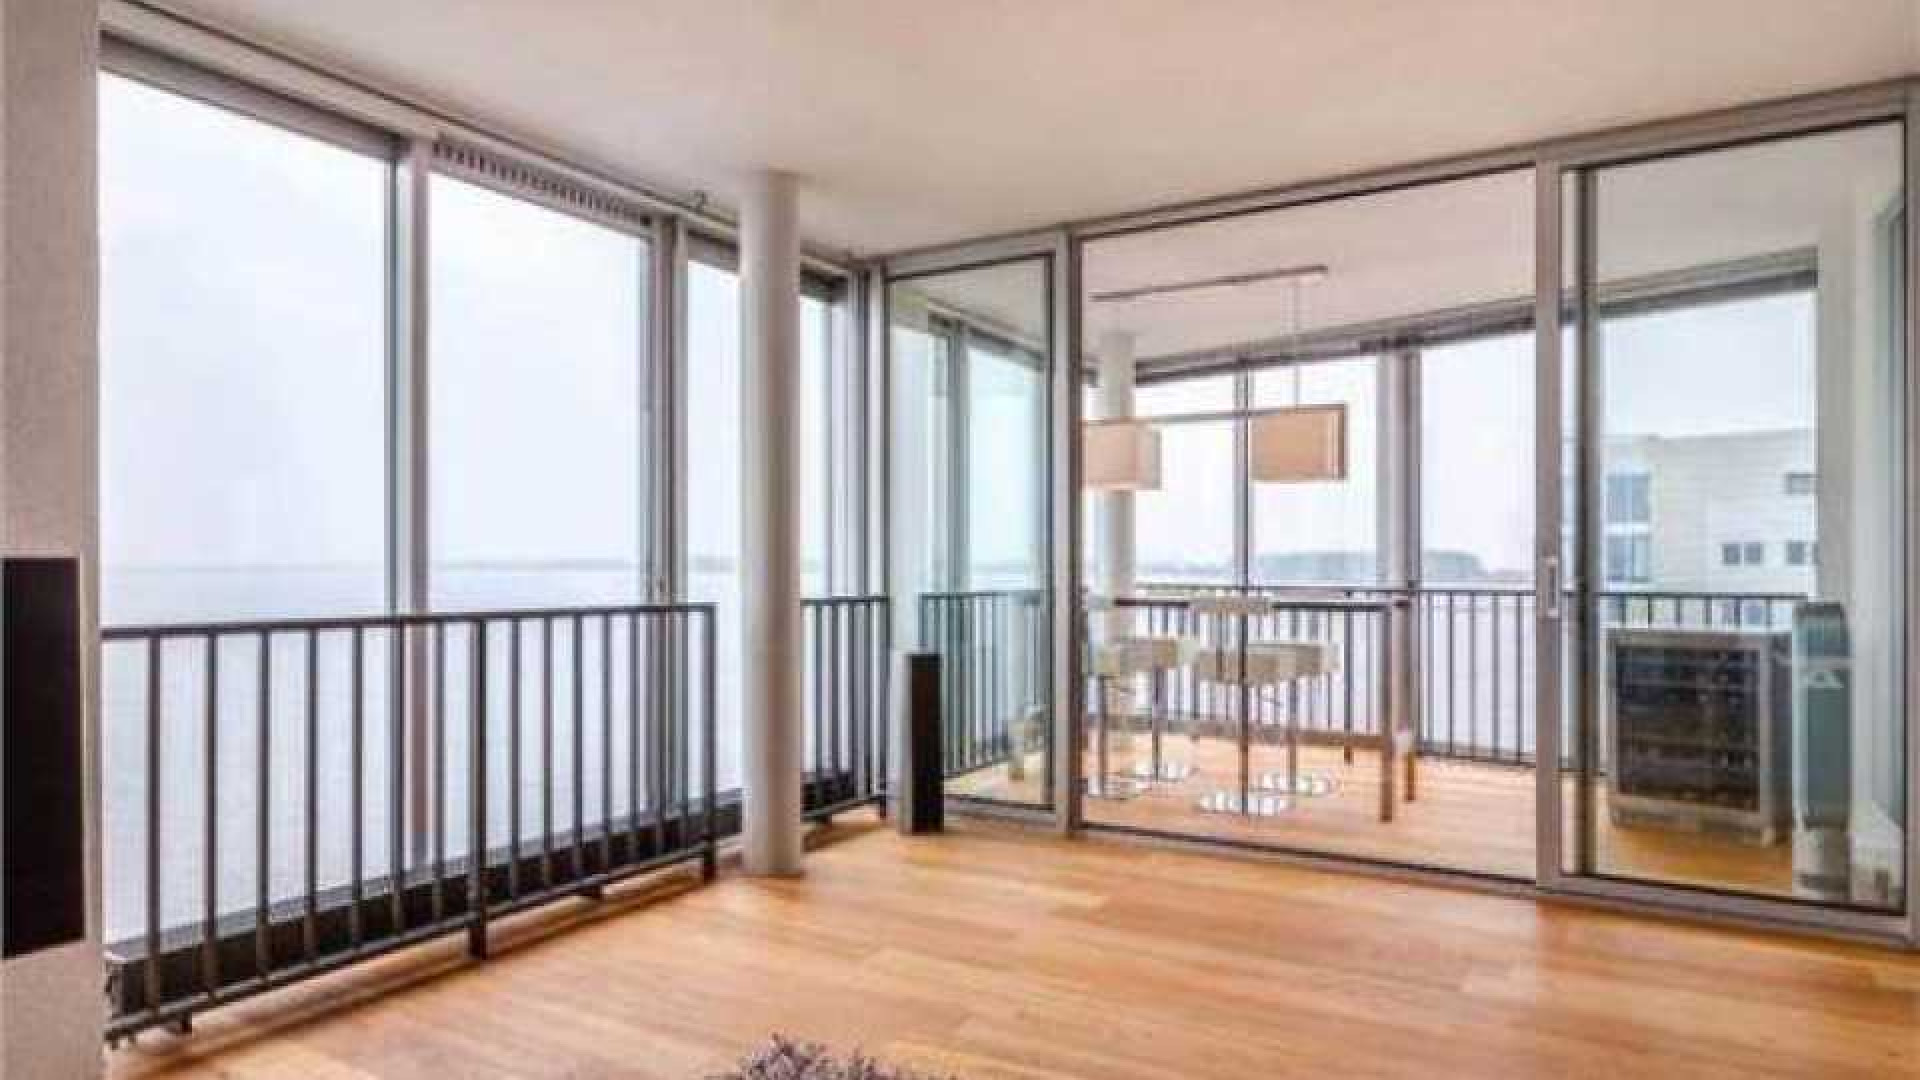 Thomas Berge ruilt riante villa met botenhuis in voor appartement. 5